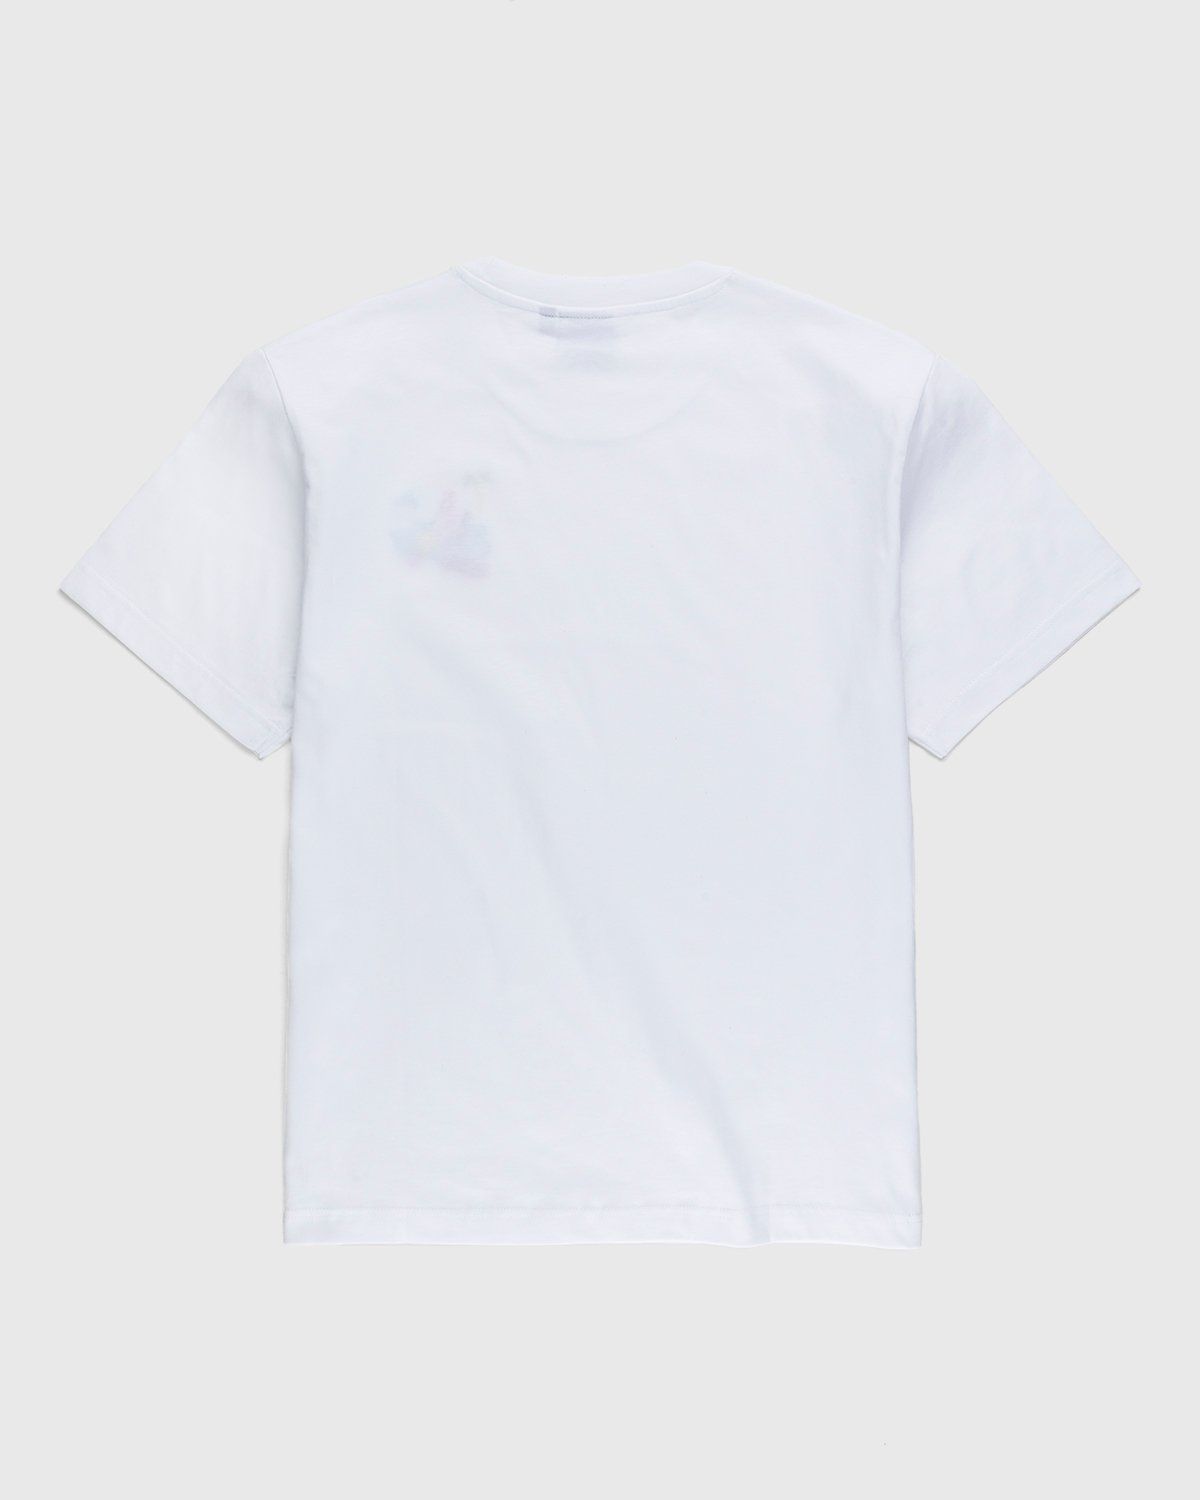 Carne Bollente – Baise sur la Plage T-Shirt White - T-Shirts - White - Image 2